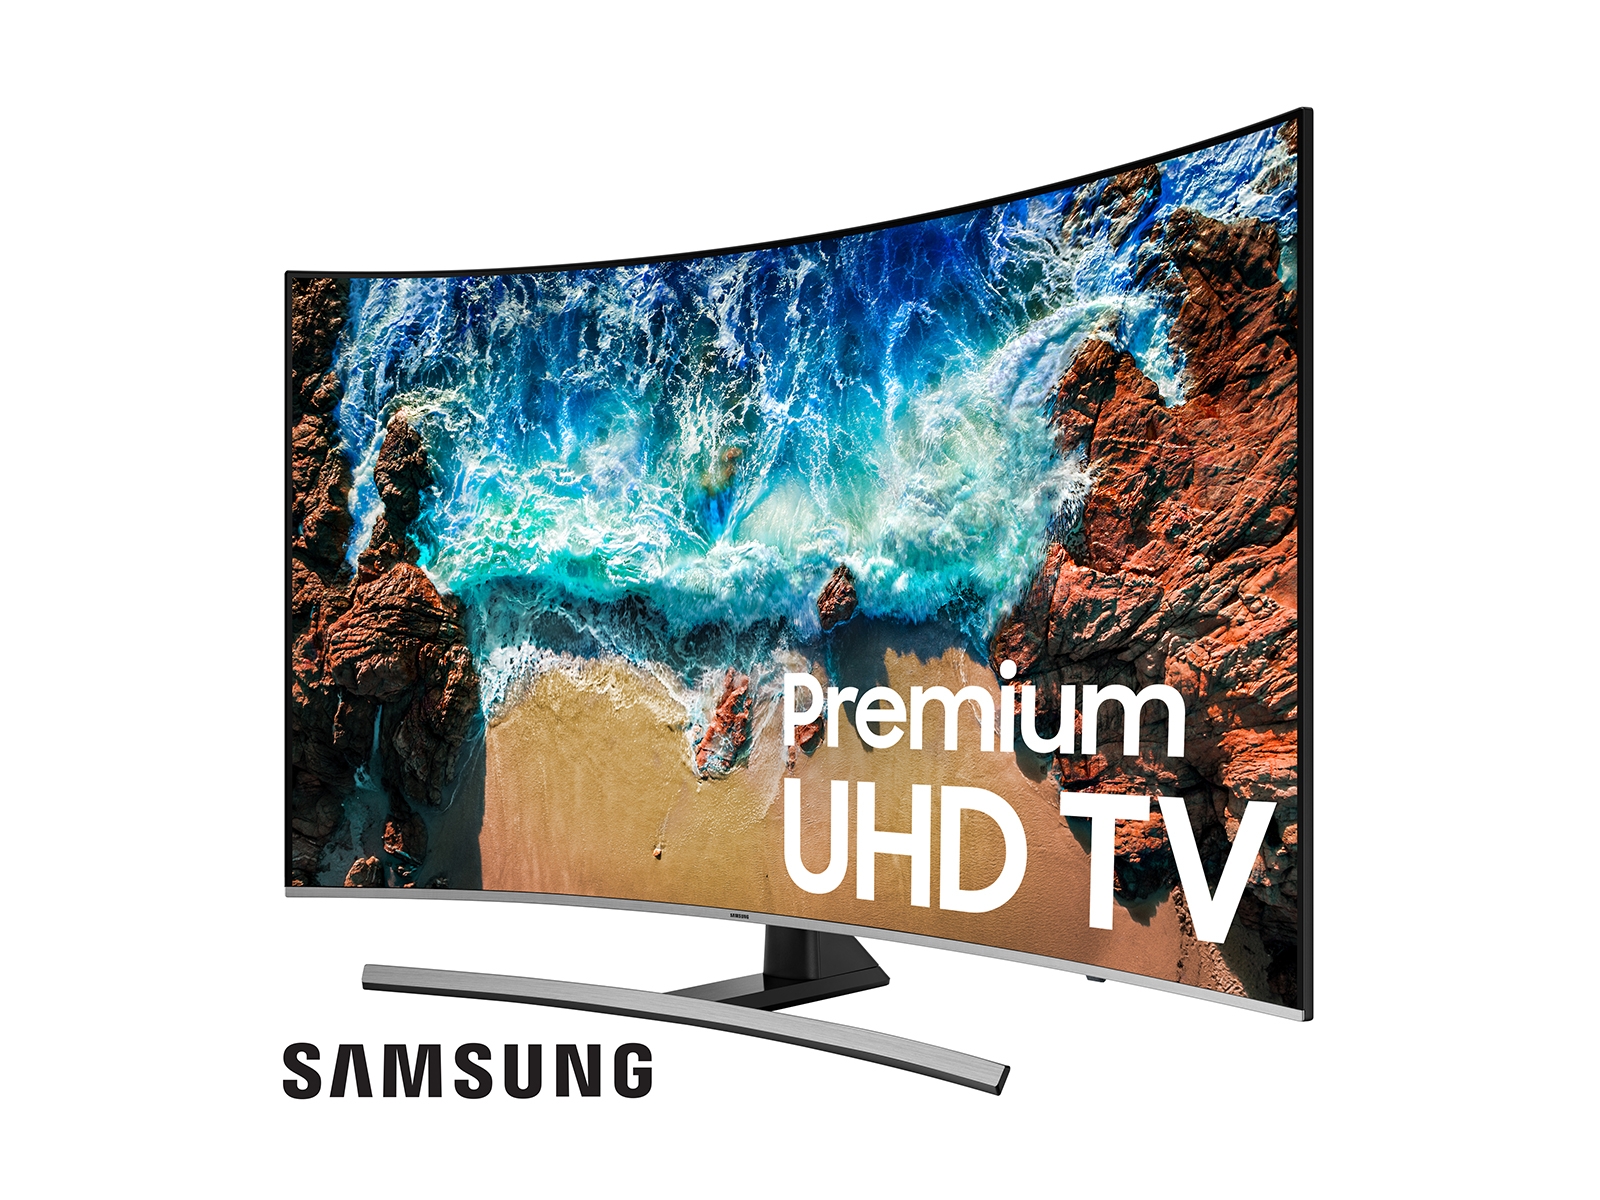 Pantalla Samsung 65 Pulgadas LED 4K Curved Smart TV a precio de